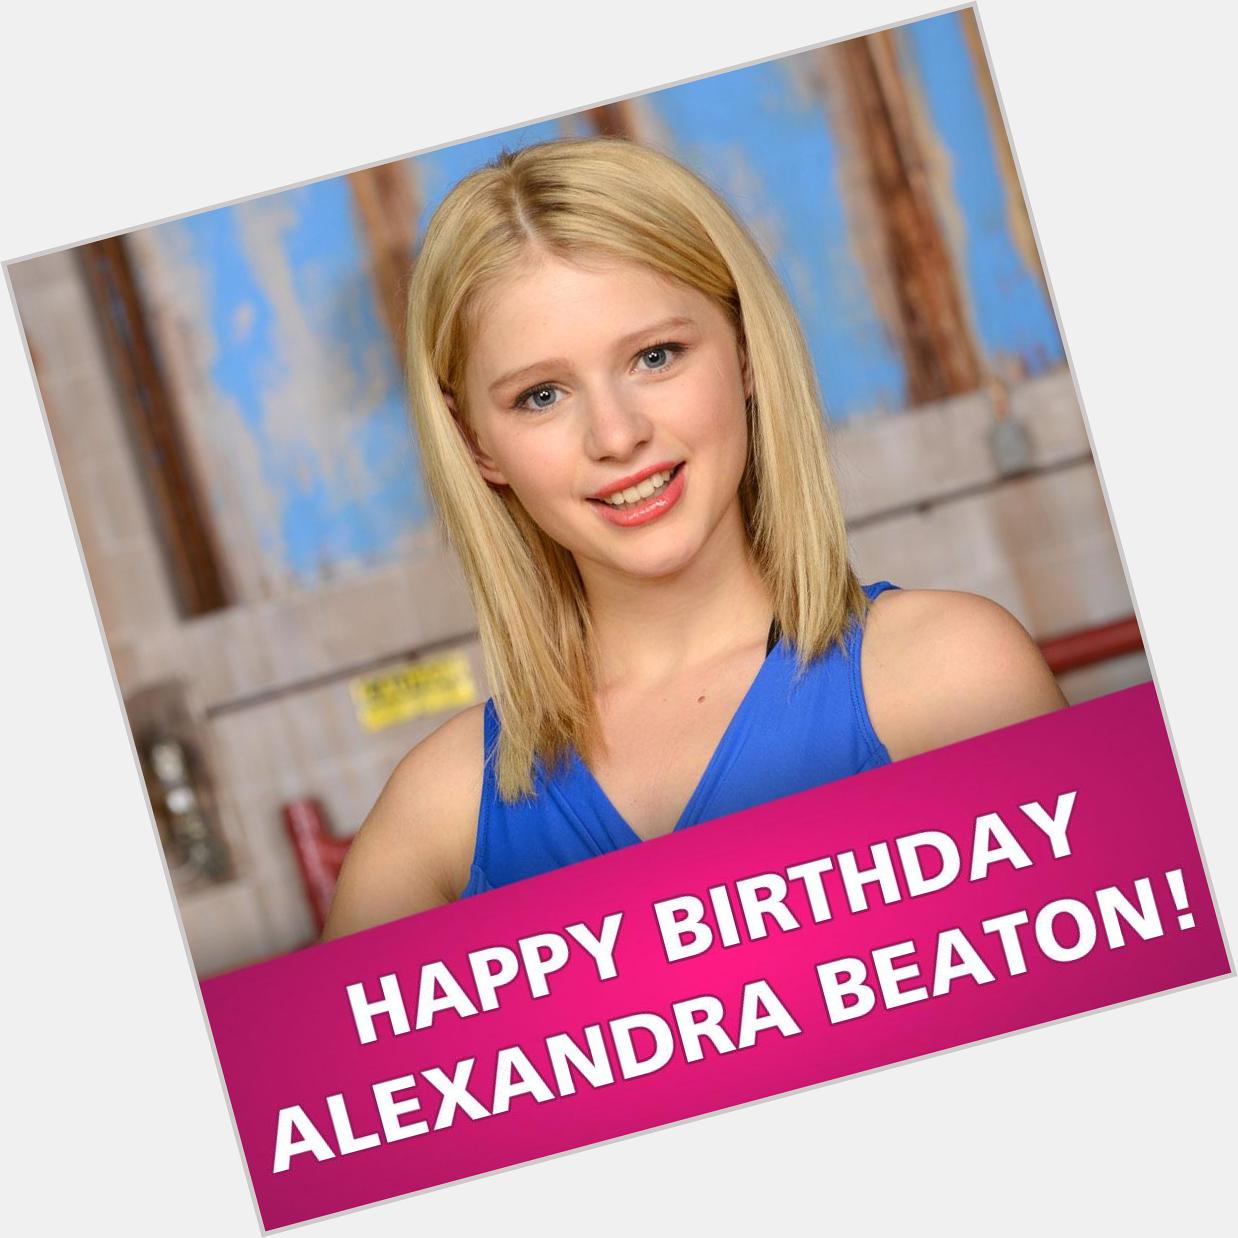 Happy Birthday to Alexandra Beaton from 